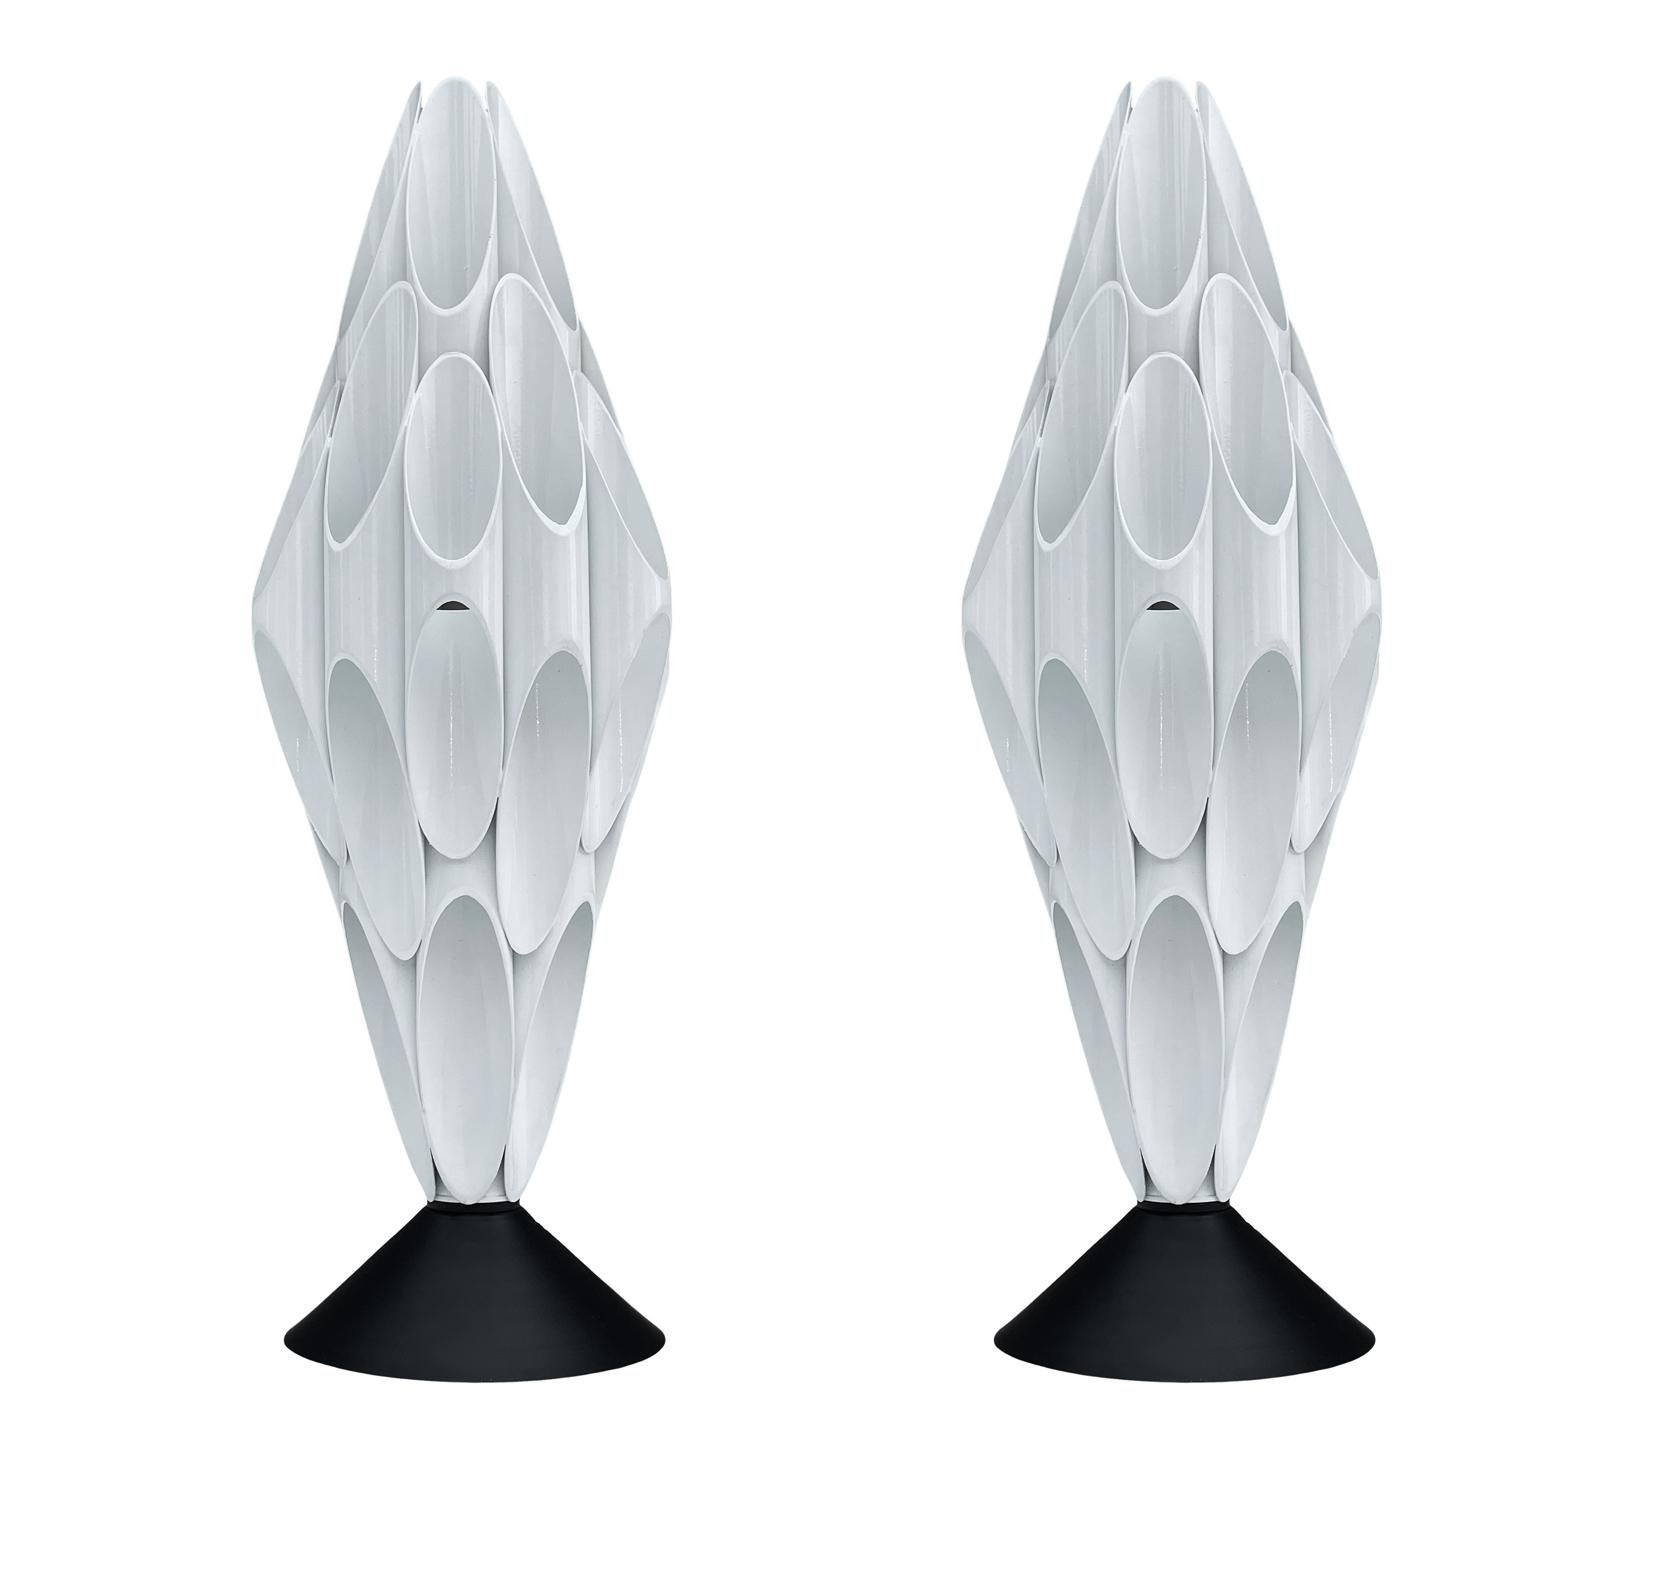 Une paire de lampes de table tubulaires étonnantes et chics fabriquées par Designline. Ils sont fabriqués en laiton recouvert de poudre. De belles lampes lourdes. Fonctionne avec une ampoule standard. La Corde est très longue et comporte un